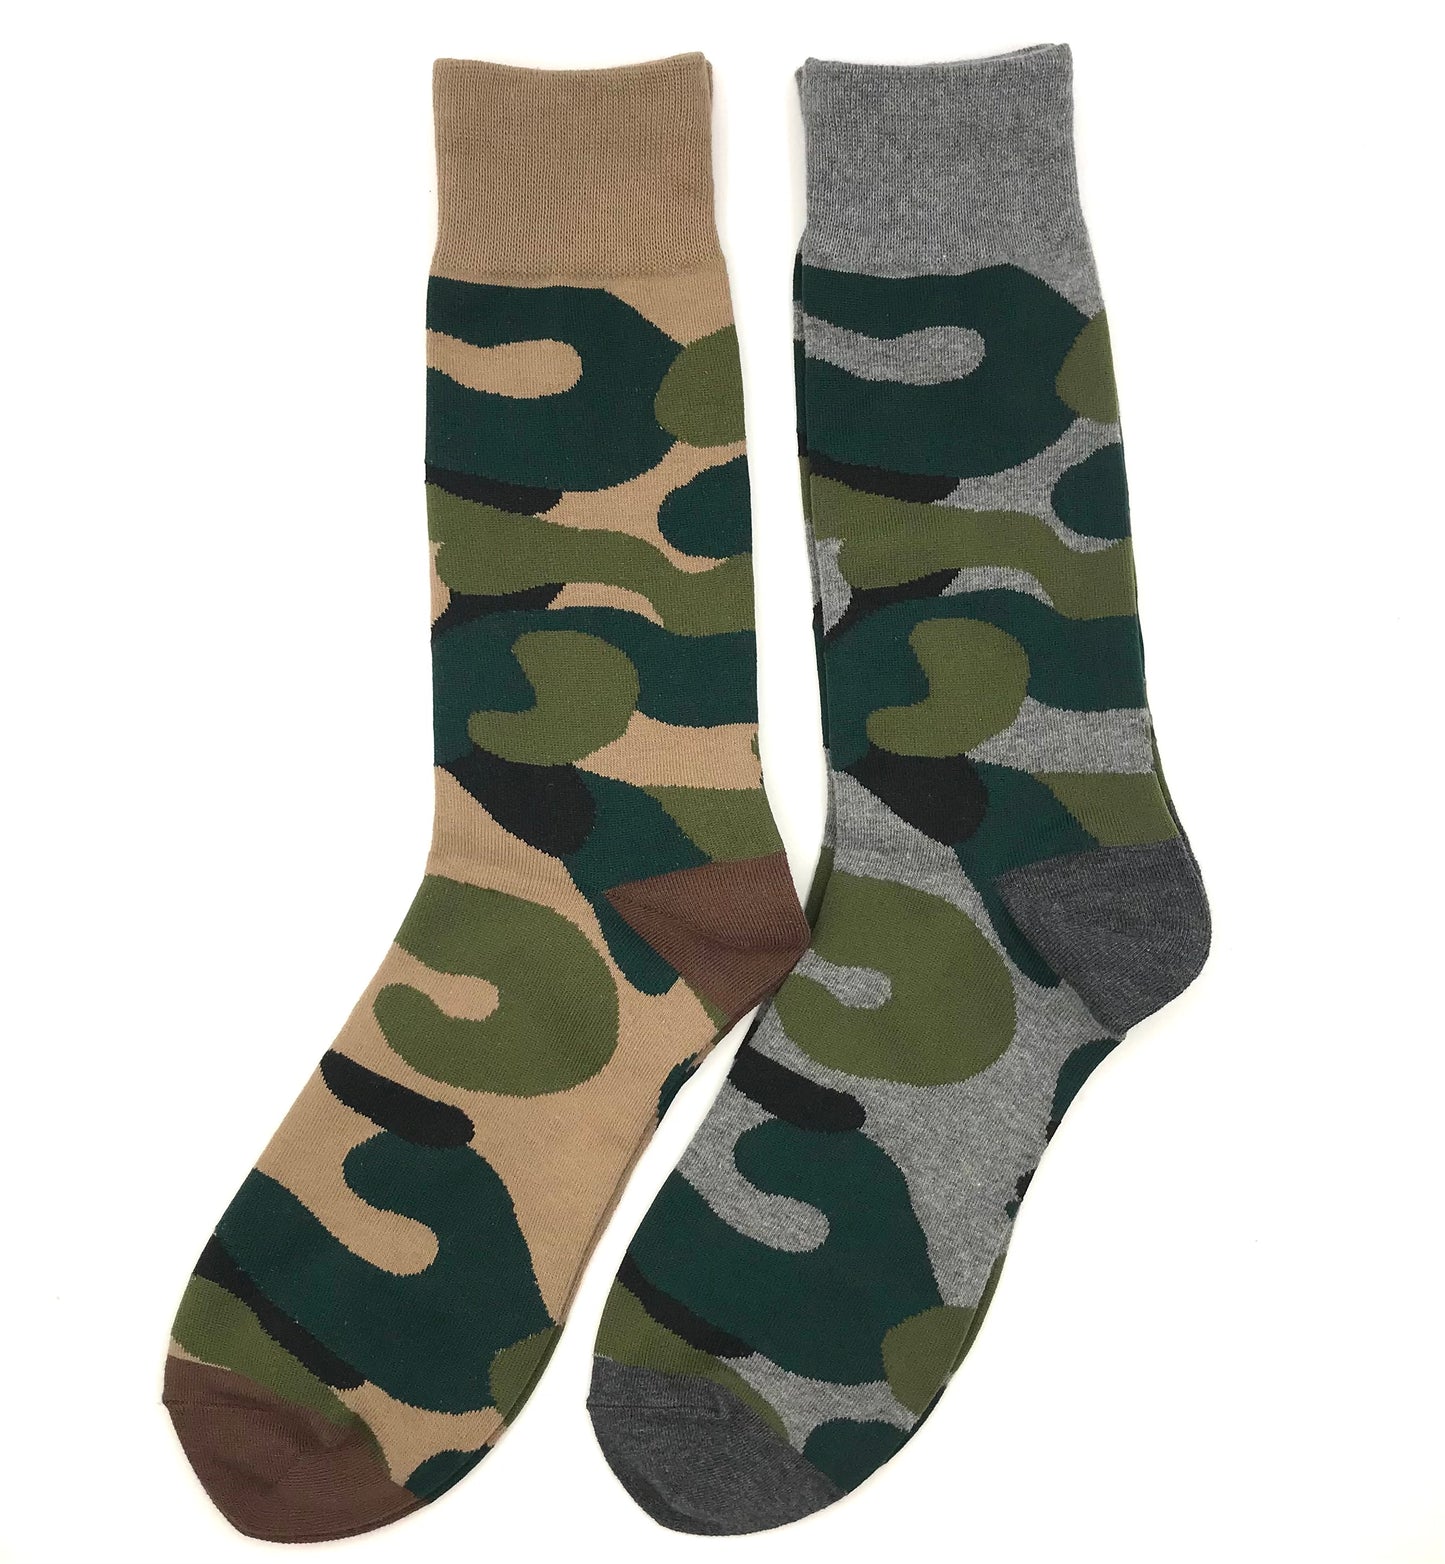 Men's Hoxton socks